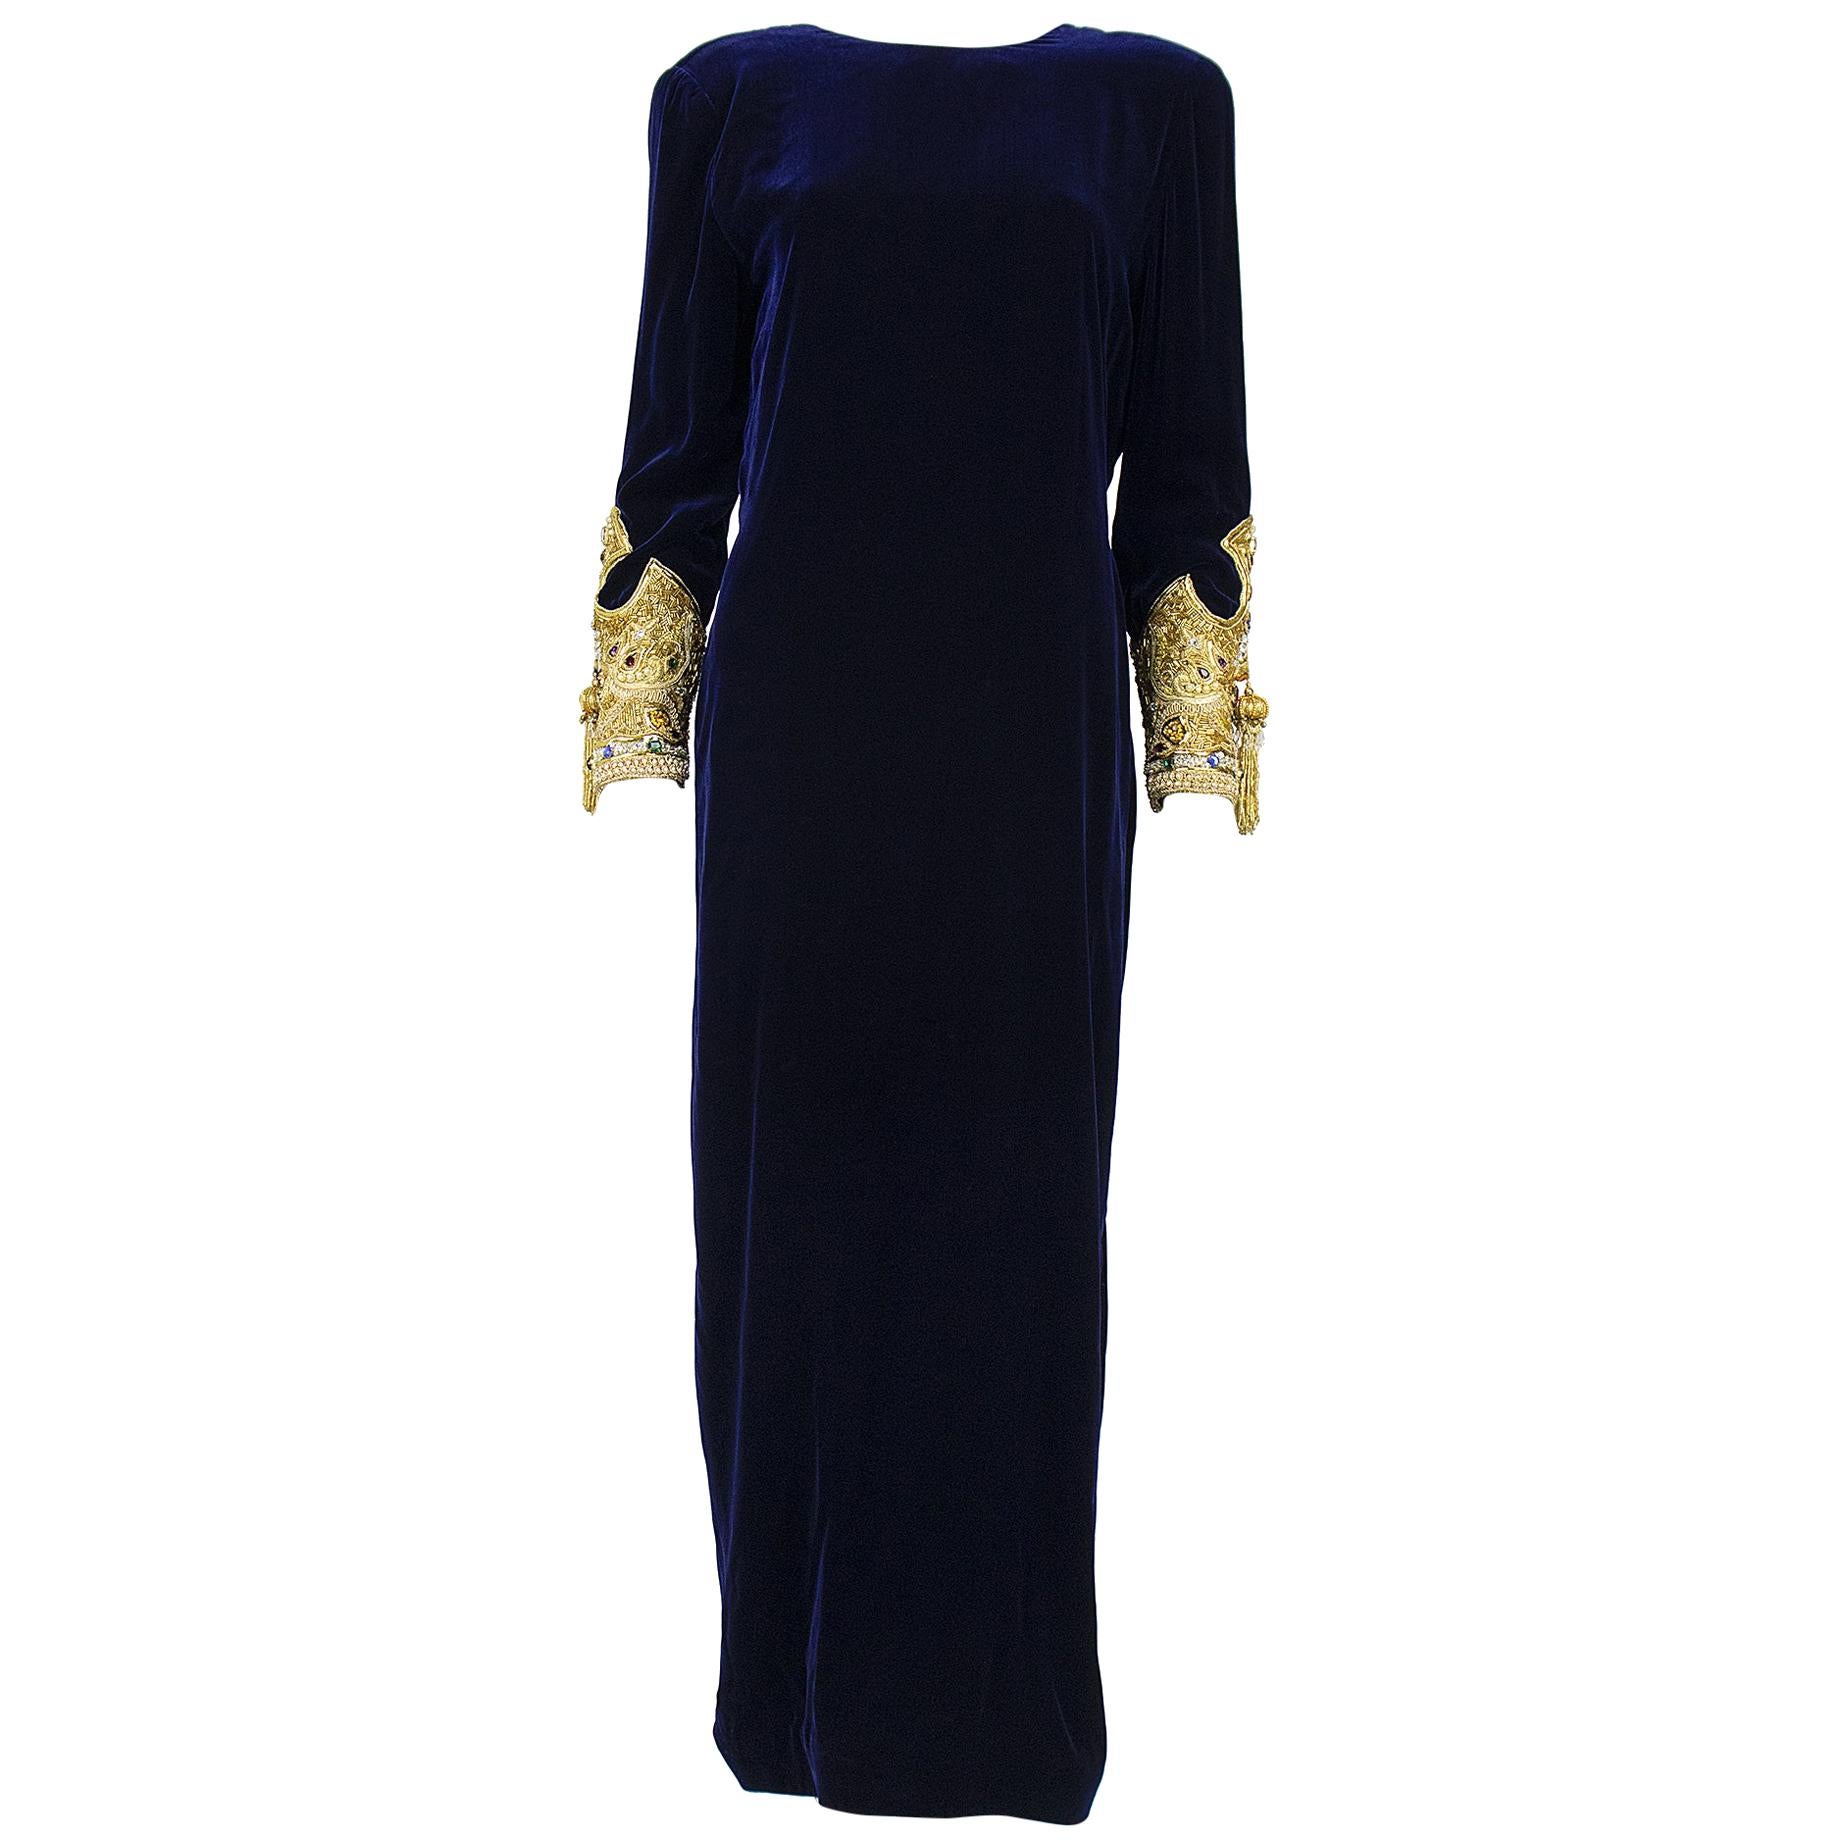 1990s Oscar De La Renta Blue Velvet Dress with Decadent Embellished Sleeves